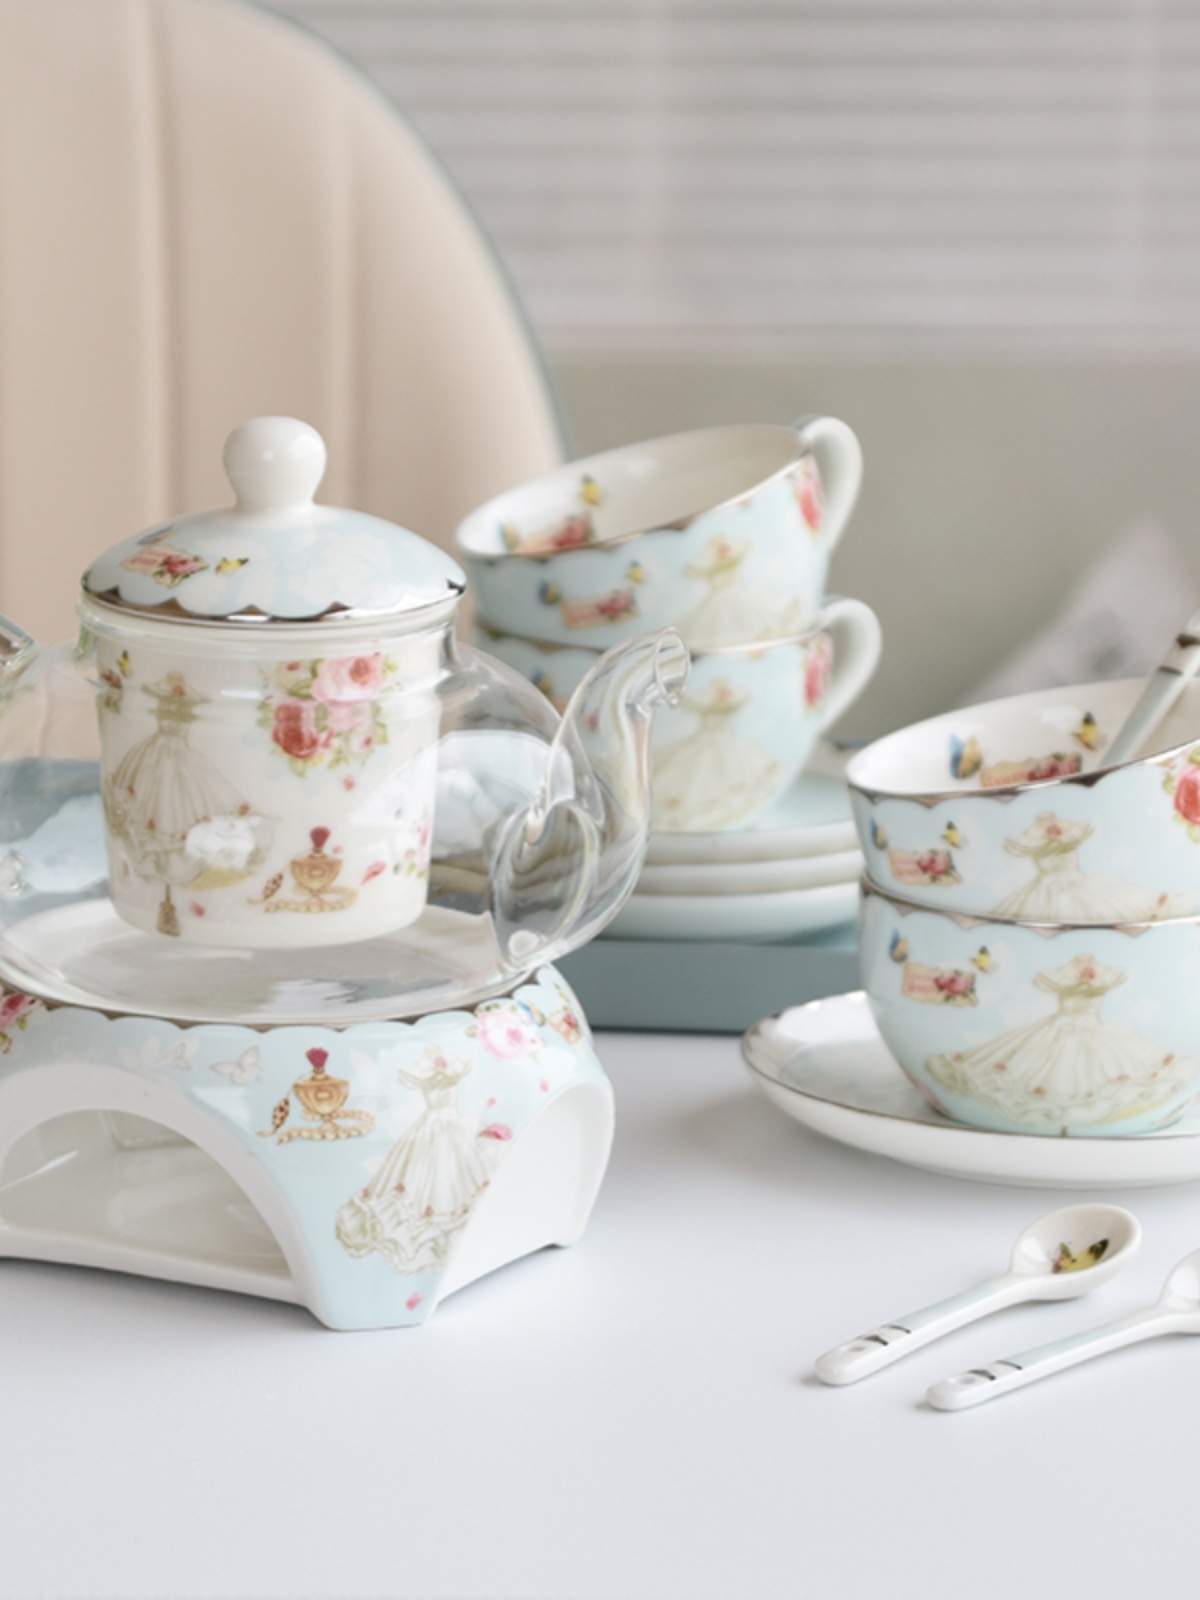 法式精緻陶瓷 英式下午茶 花茶壺 蠟燭加熱 玻璃茶杯 水果茶具套裝 送禮